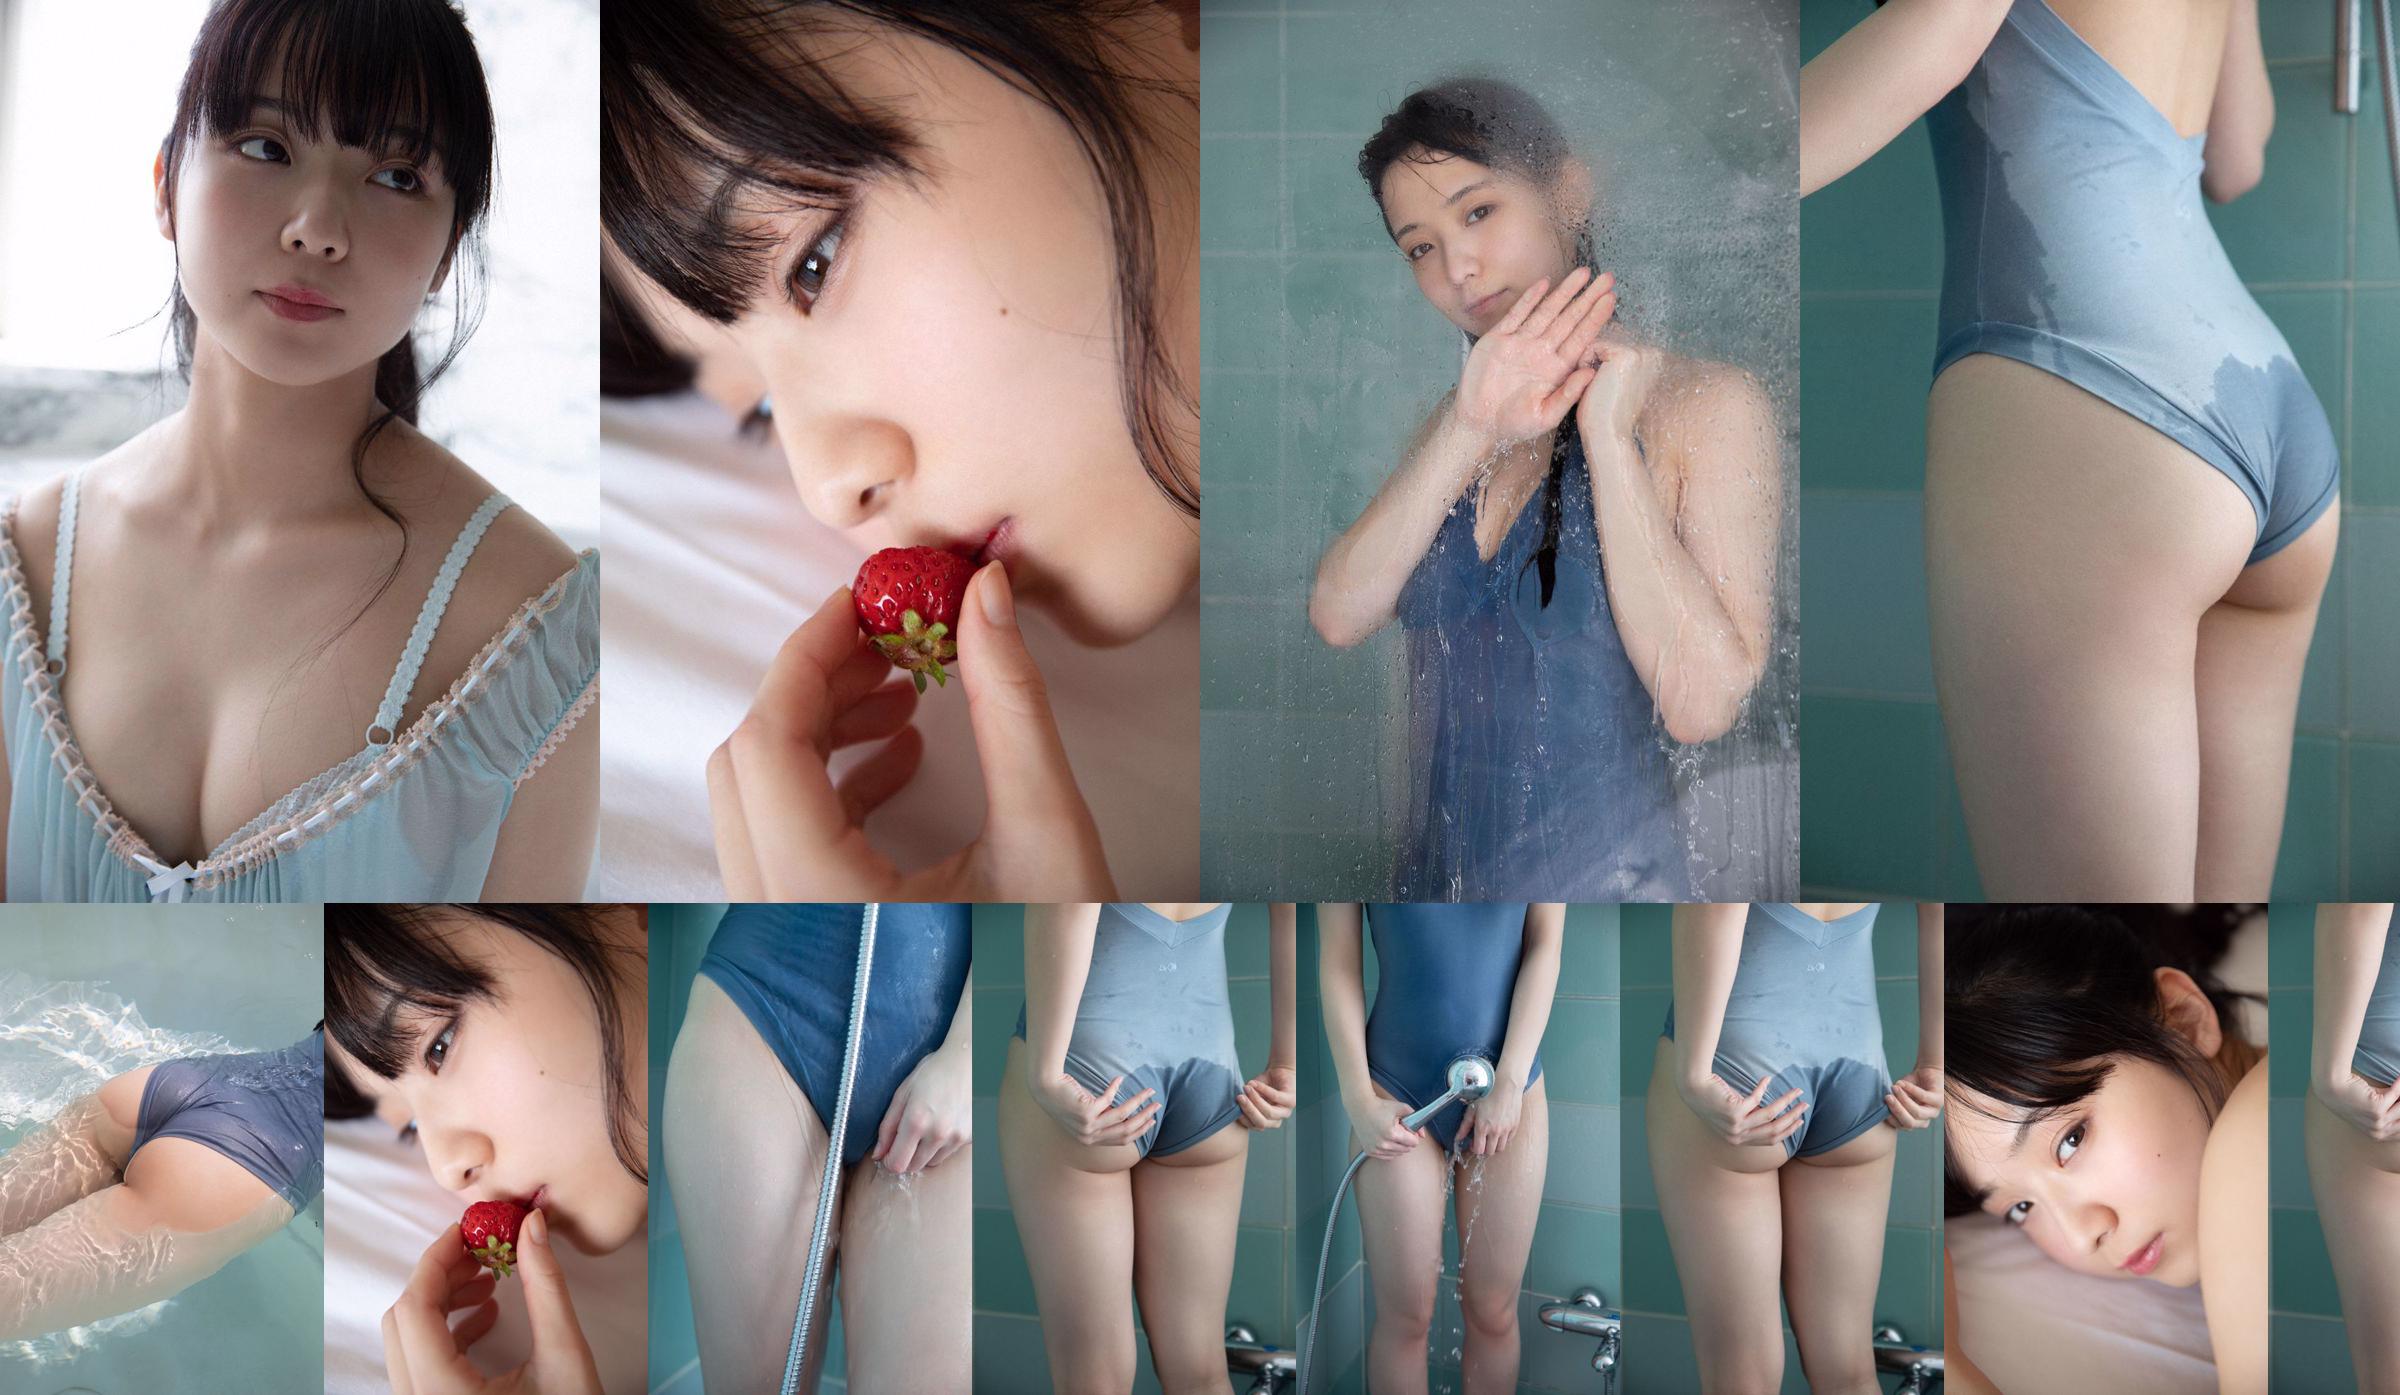 [VIERNES] Mio Imada "Milagro de actriz + bikini en el drama" Hana nochi Hare "" Foto No.878502 Página 4